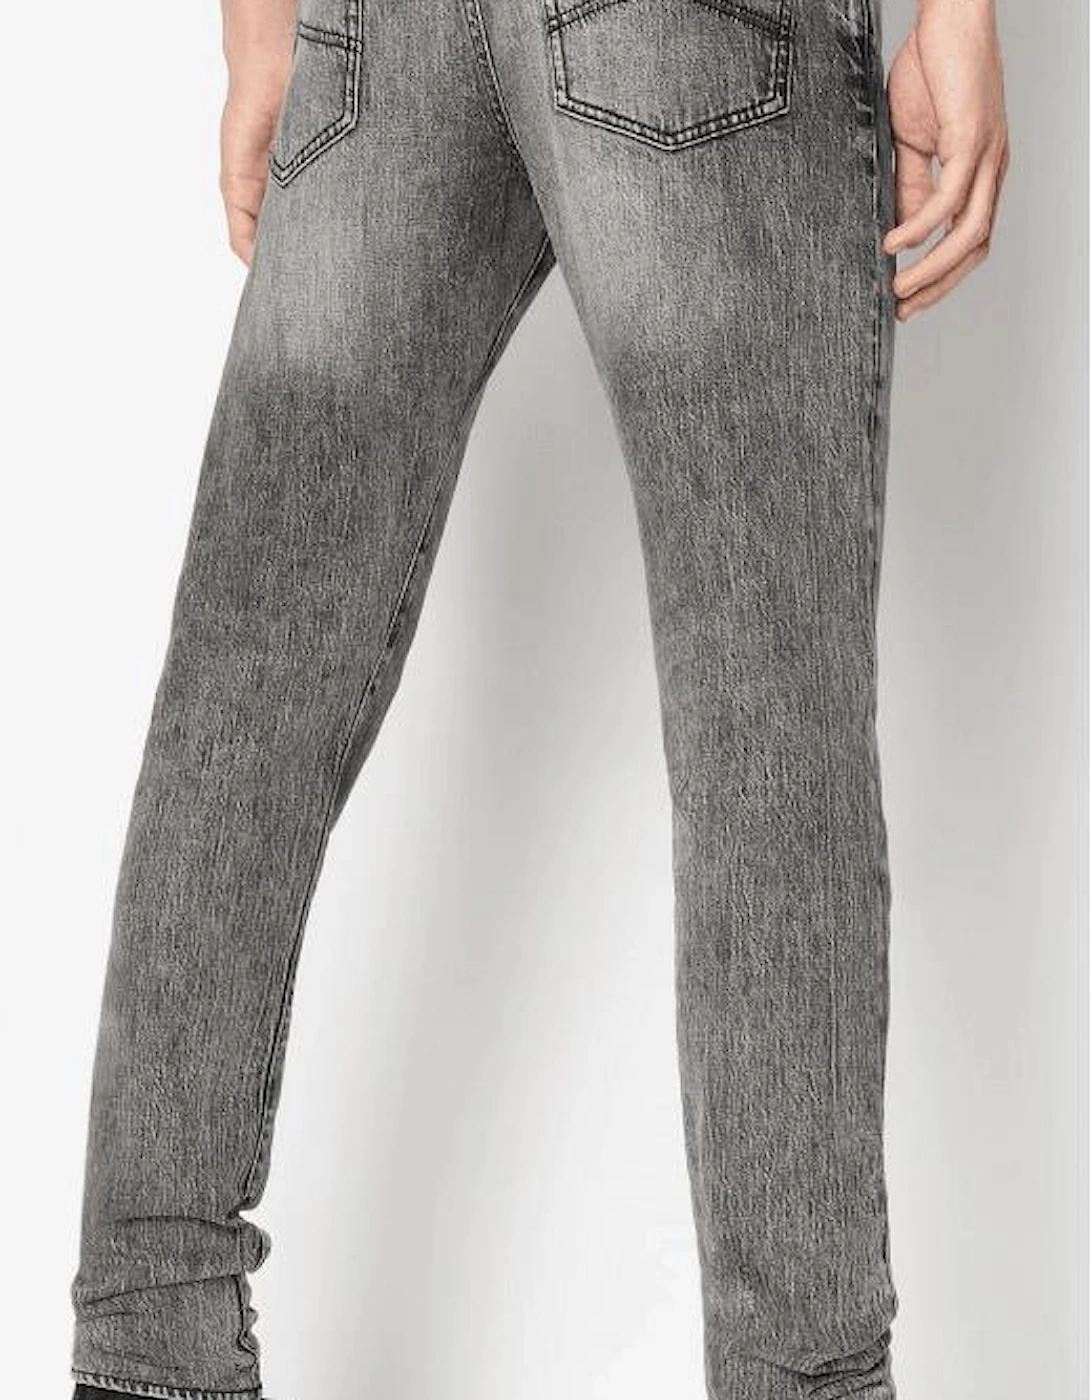 J10 Cotton Slim Fit Grey Jeans